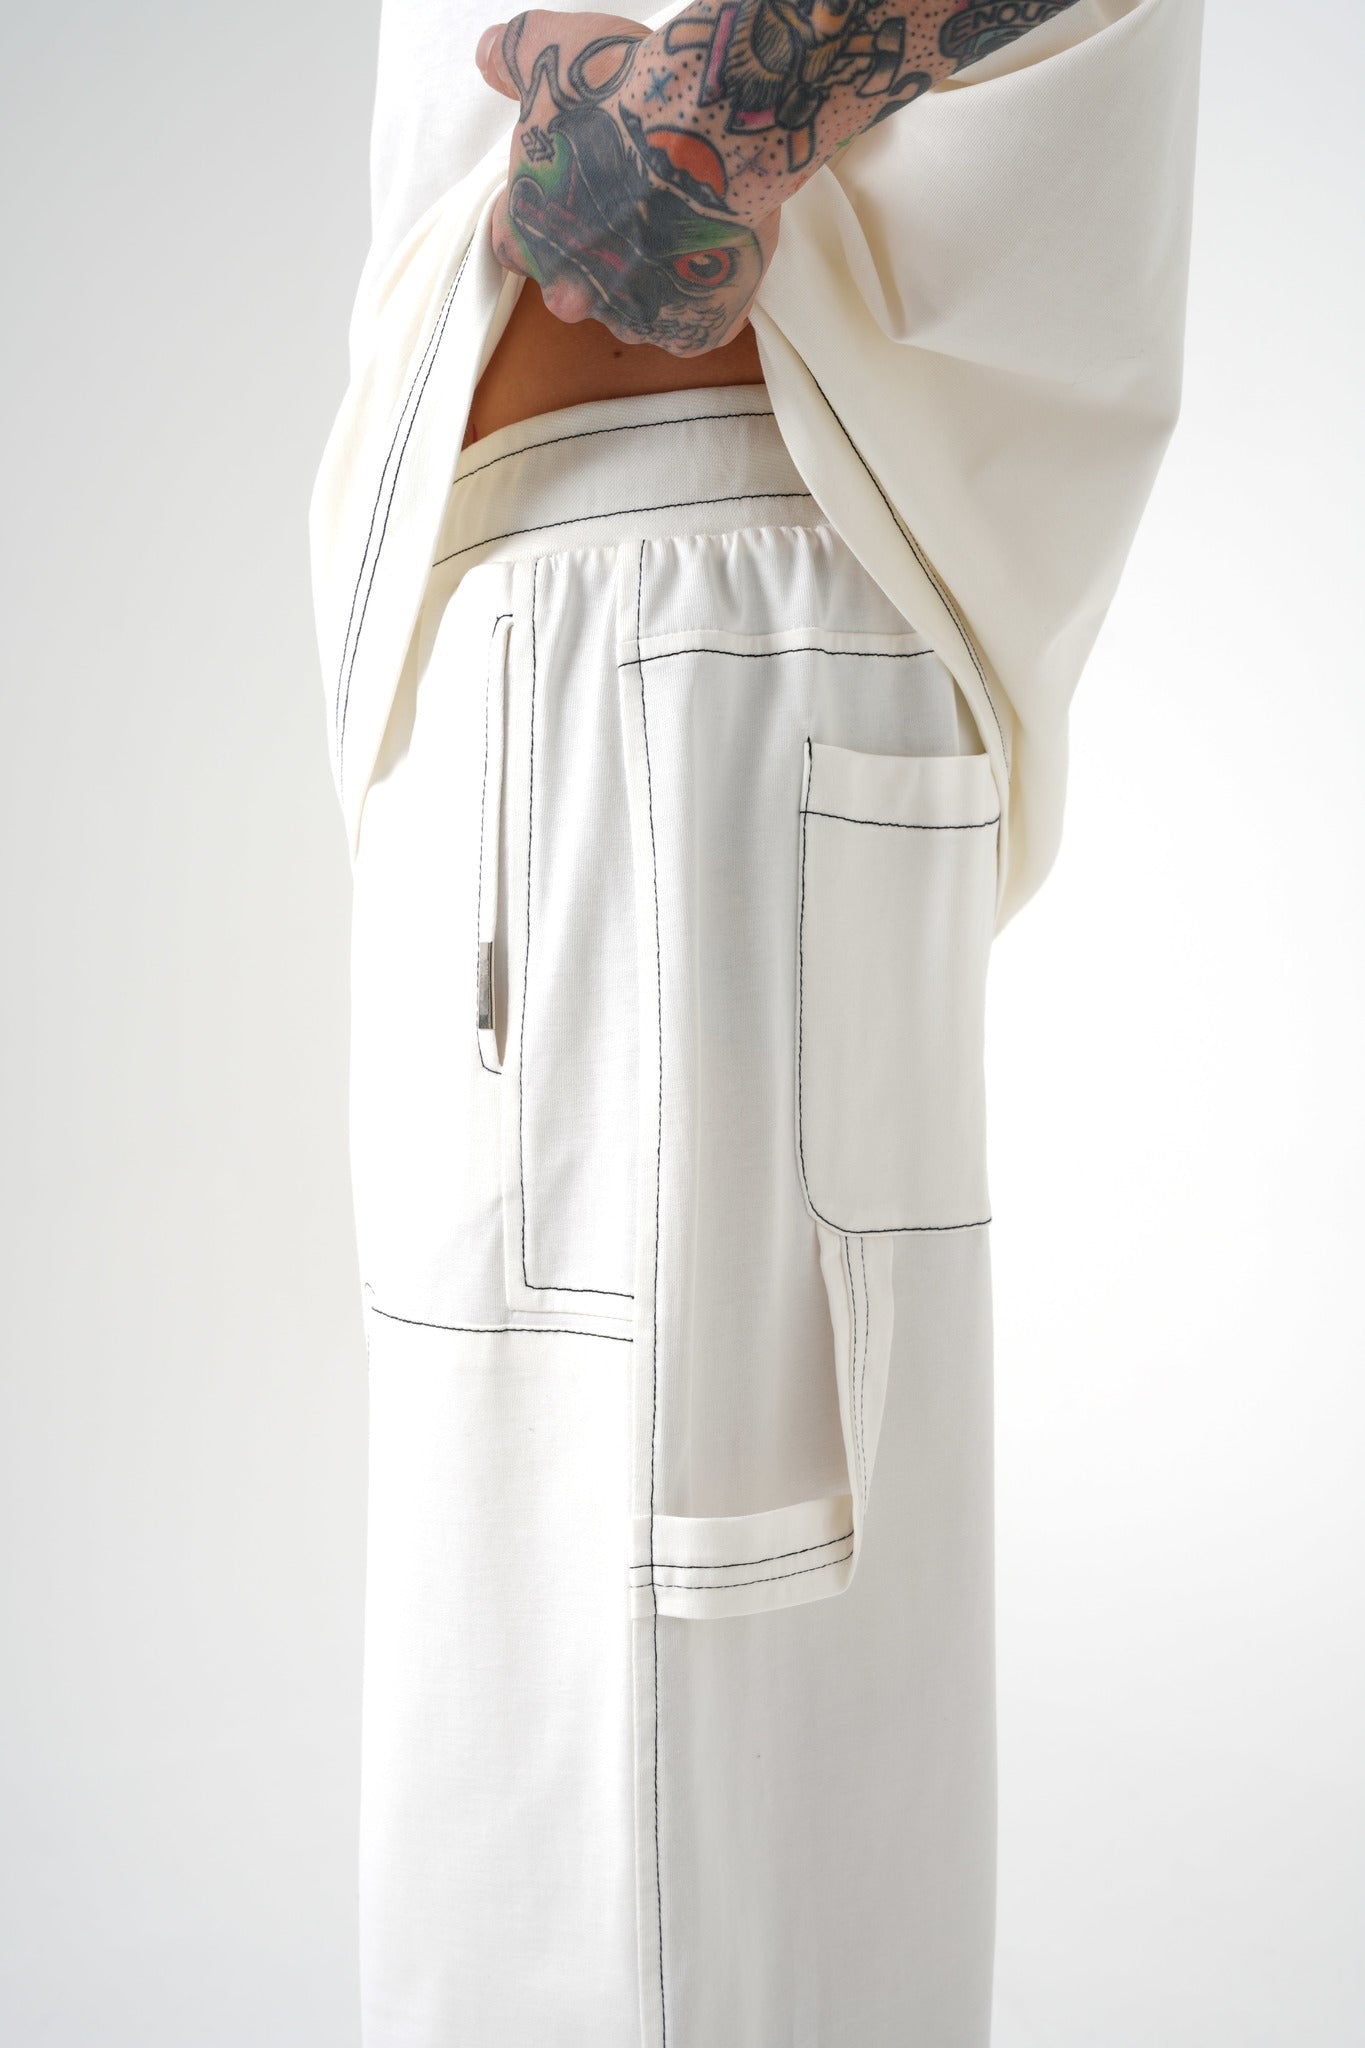 White Premium Sewed Pants